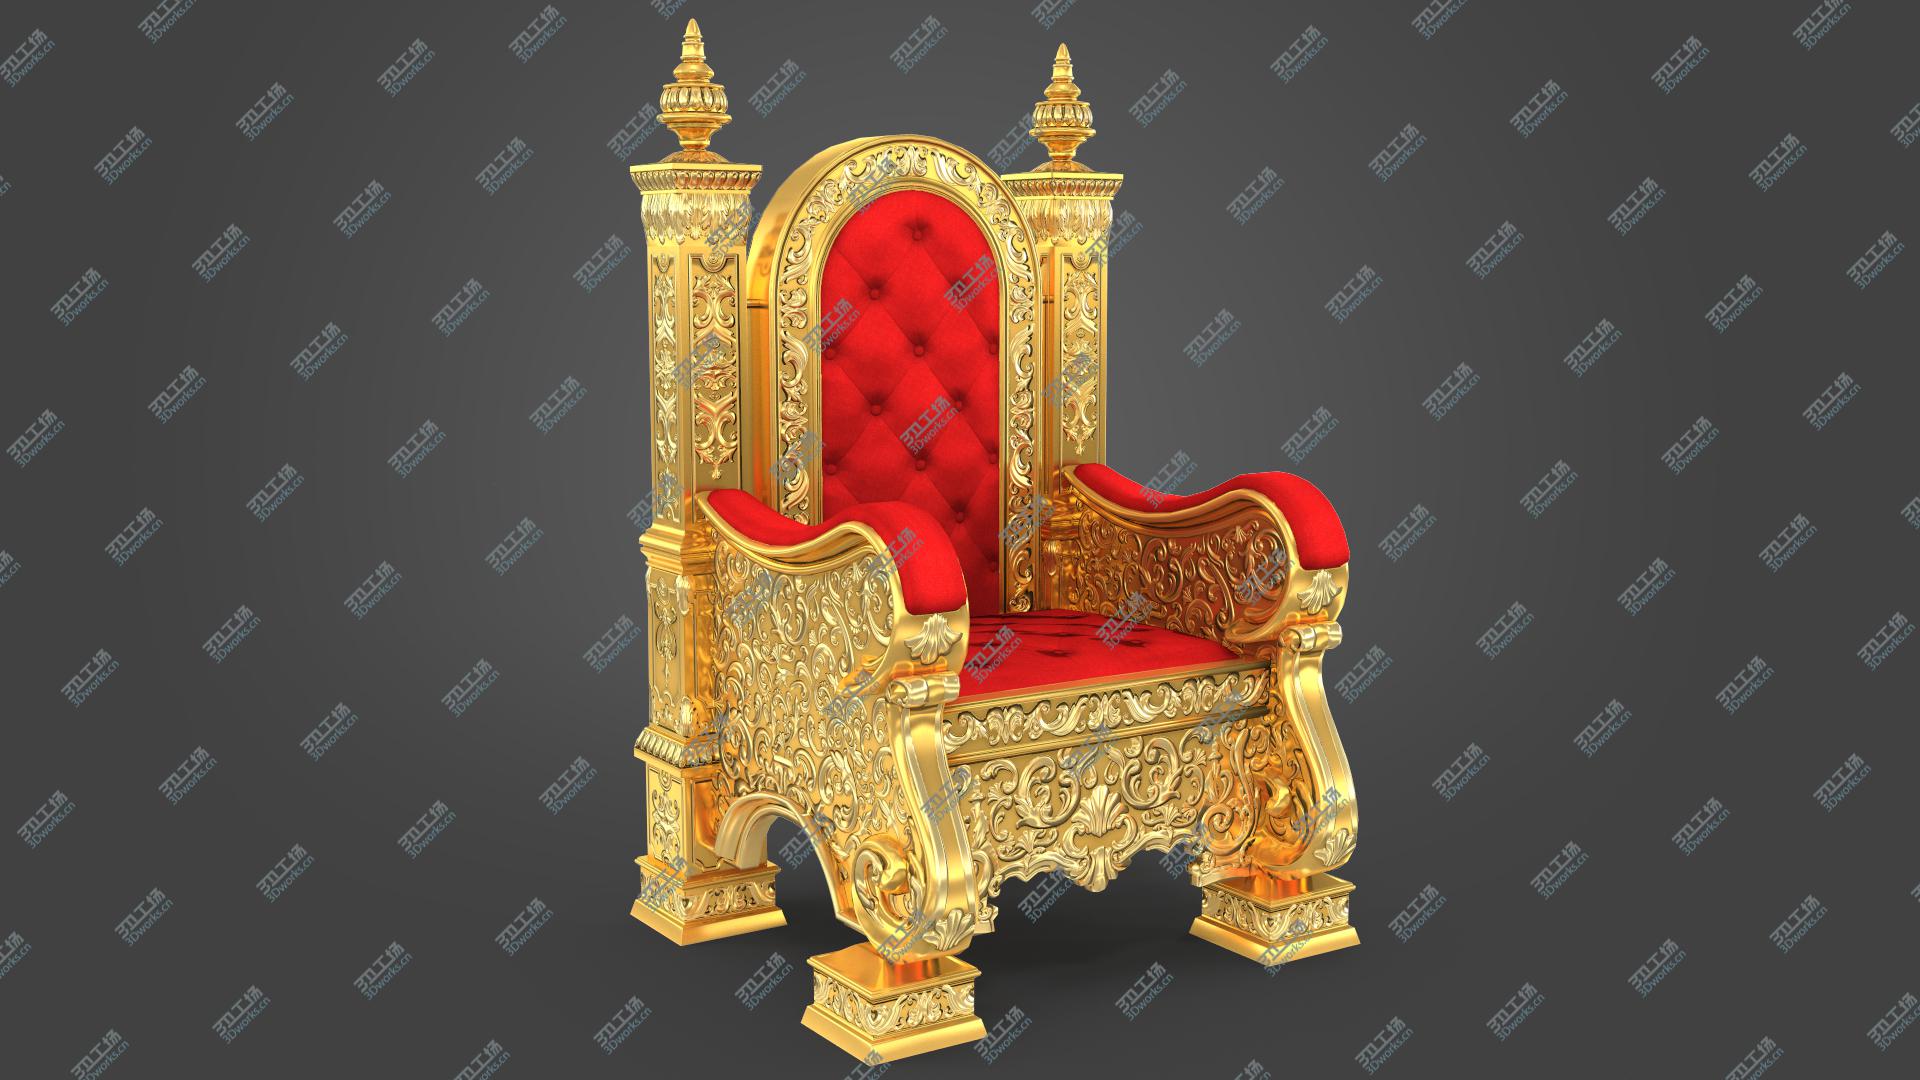 images/goods_img/2021040162/3D Kings Throne Chair model/2.jpg